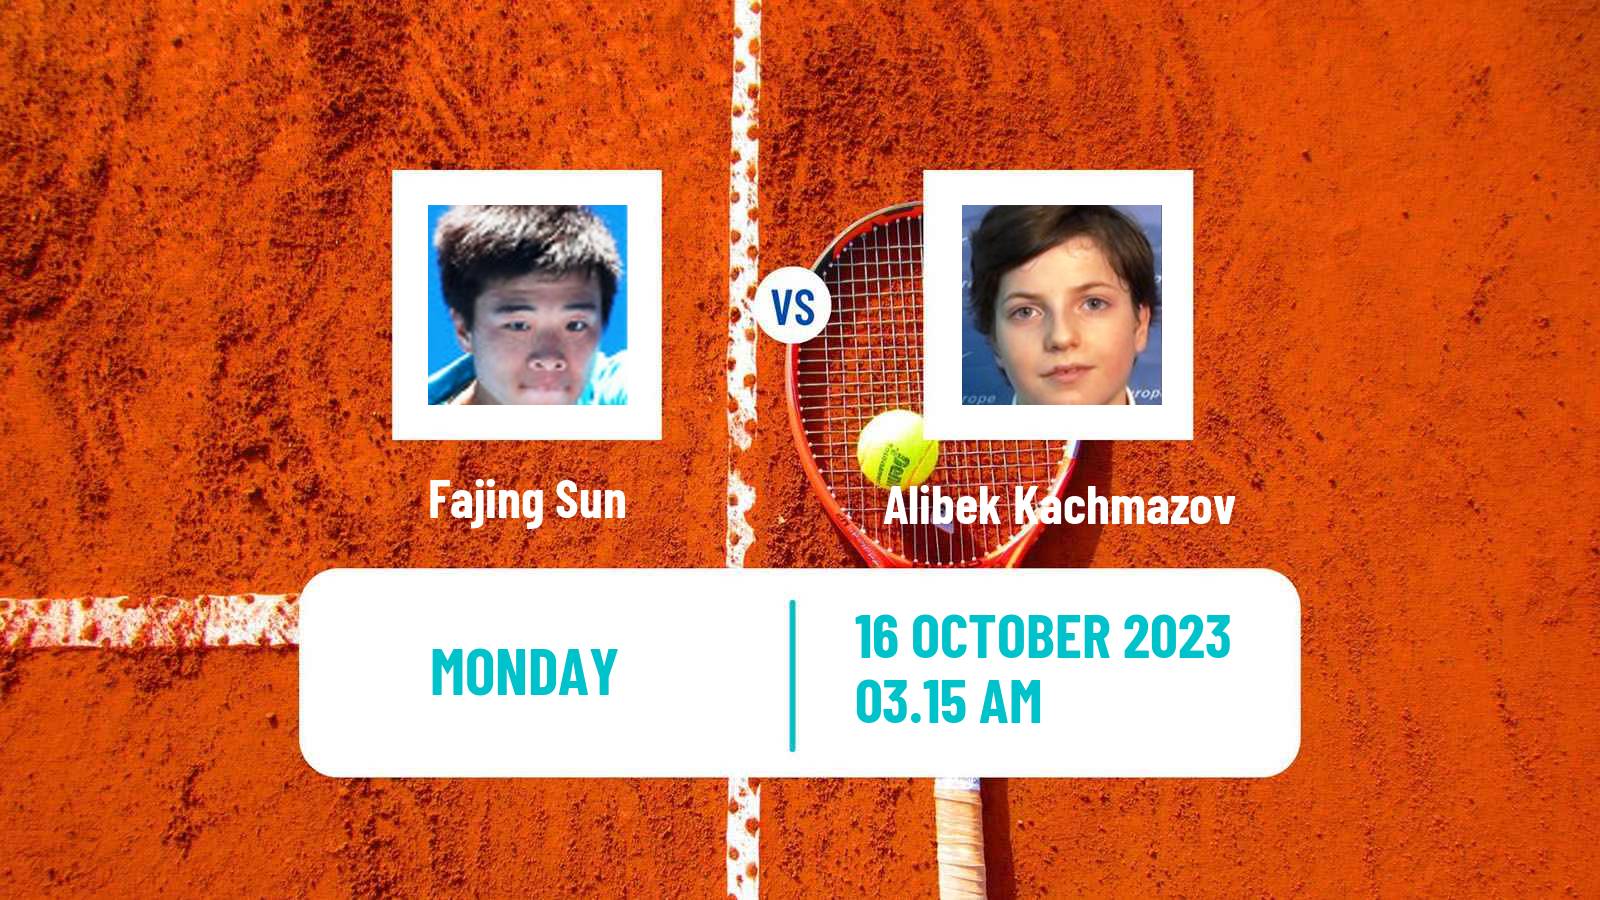 Tennis Shenzhen 3 Challenger Men Fajing Sun - Alibek Kachmazov